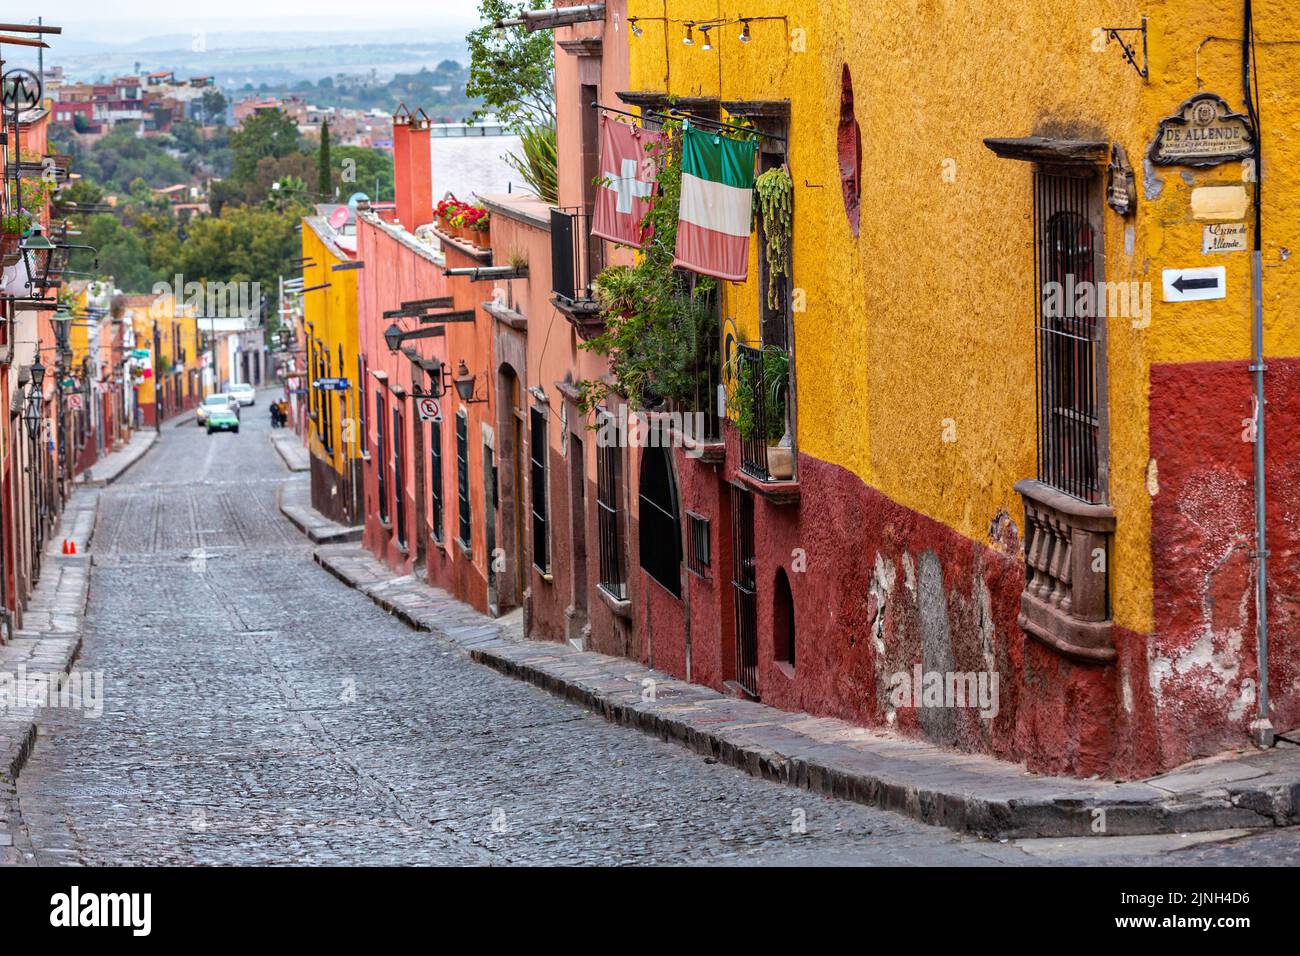 Une vue sur Pila Seca bordée de bâtiments de style colonial espagnol colorés dans le centre-ville historique de San Miguel de Allende, Mexique. Banque D'Images